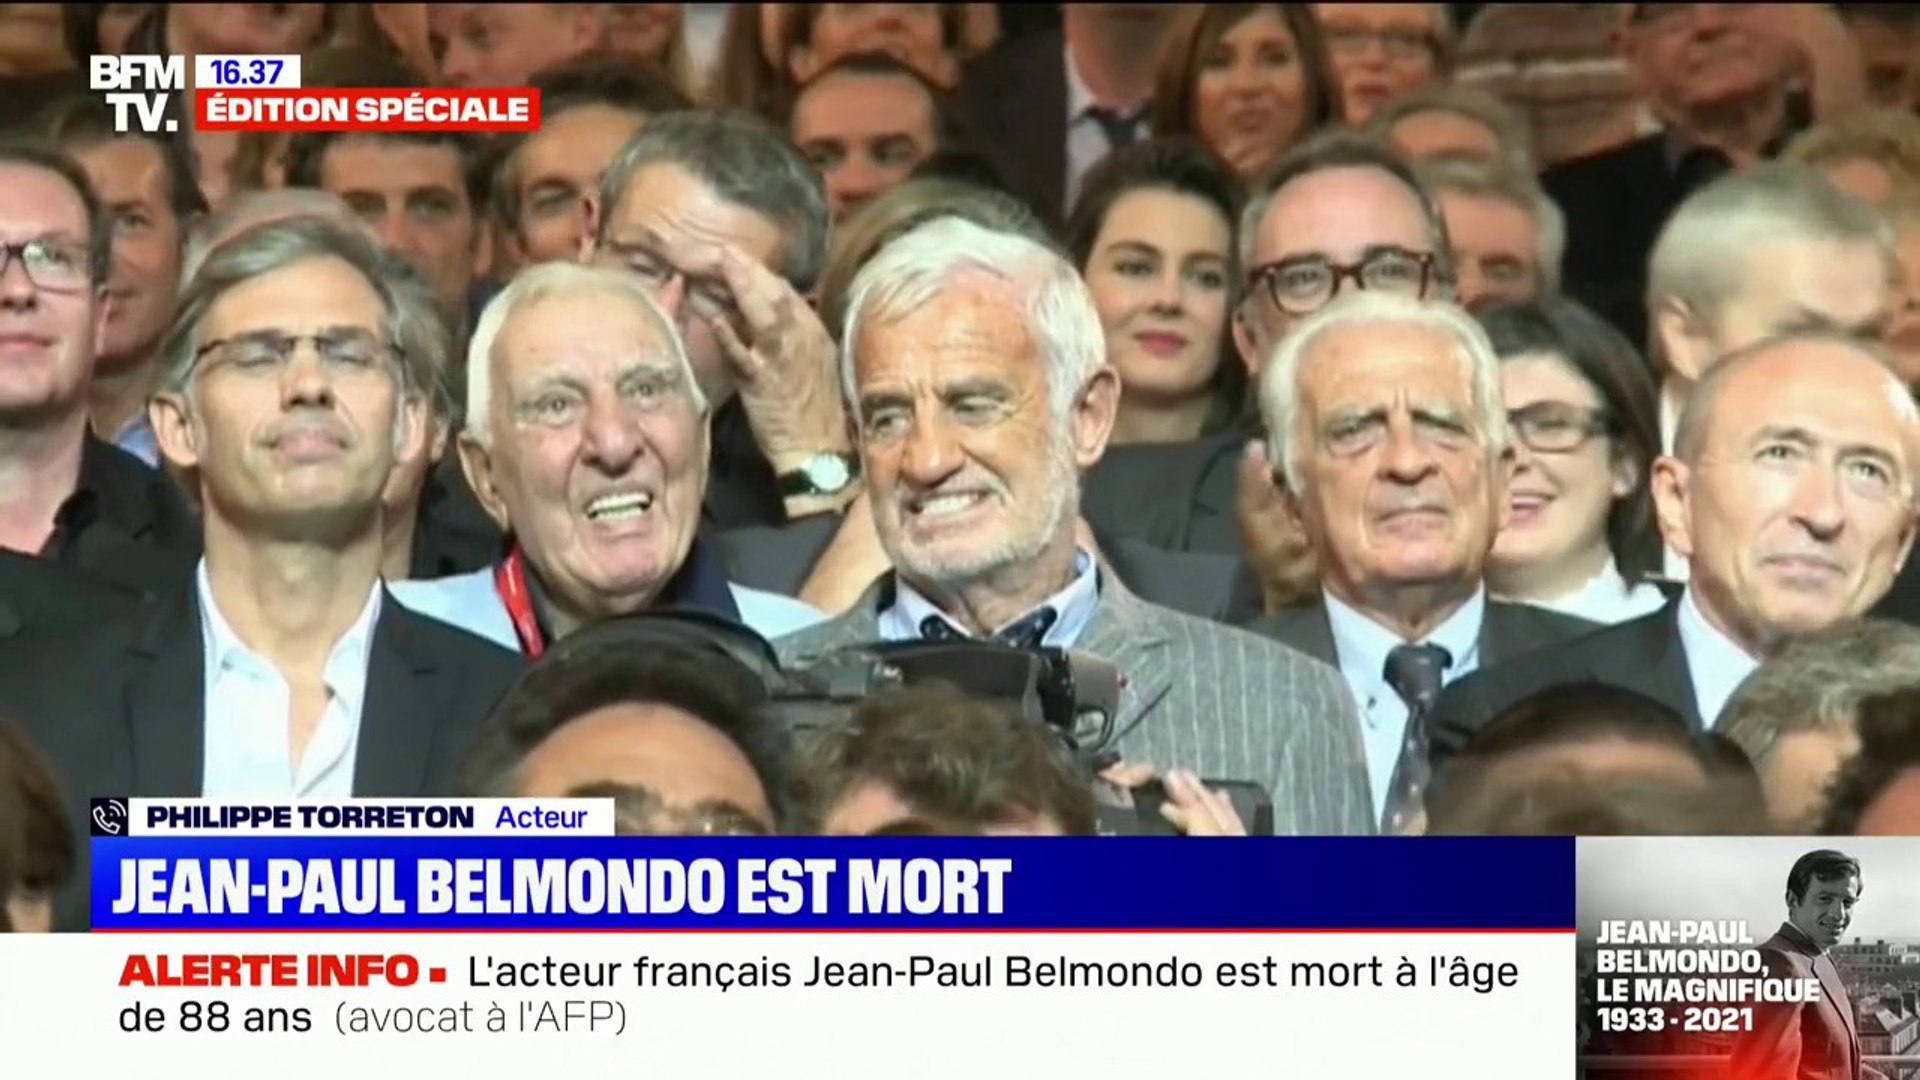 Philippe Labro: Jean-Paul Belmondo "'était un homme d'une grande  simplicité, d'une grande humilité" - Vidéo Dailymotion